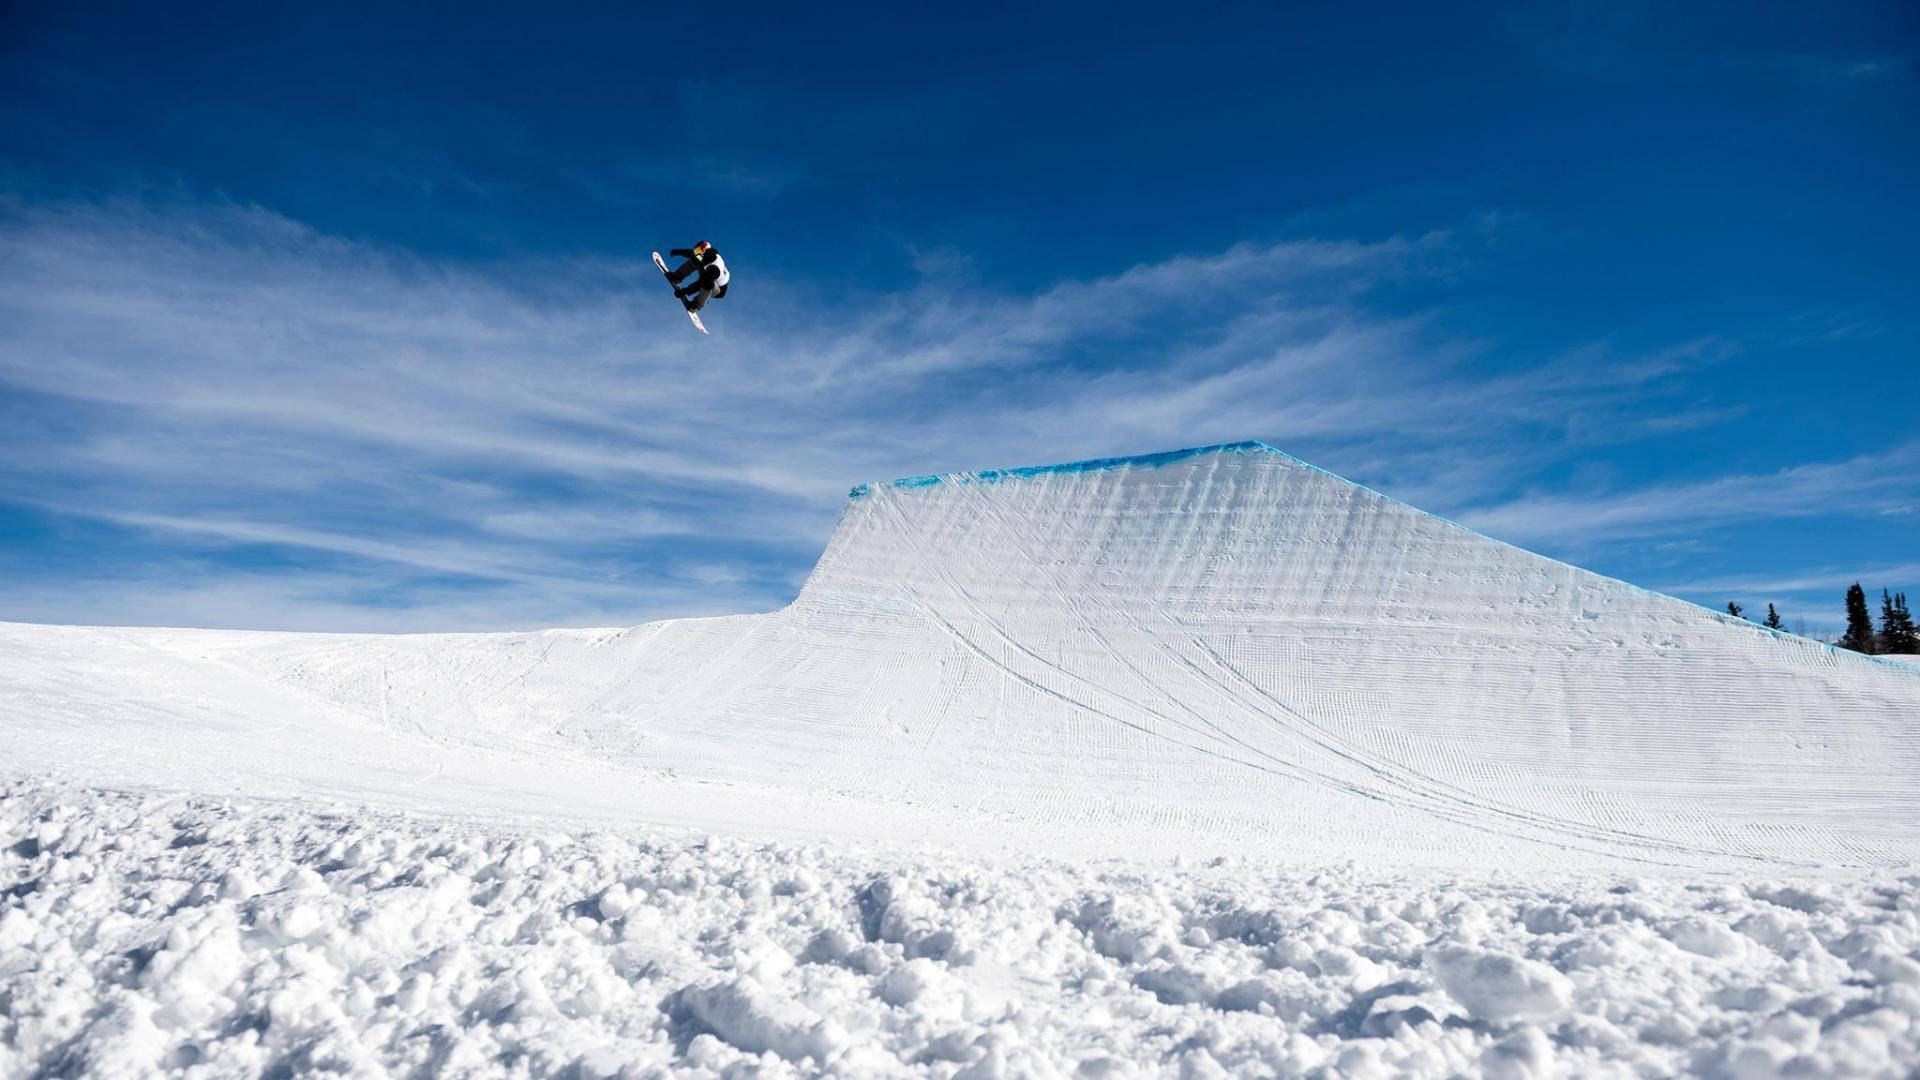 X Games Snowboarder Aerial Stunt